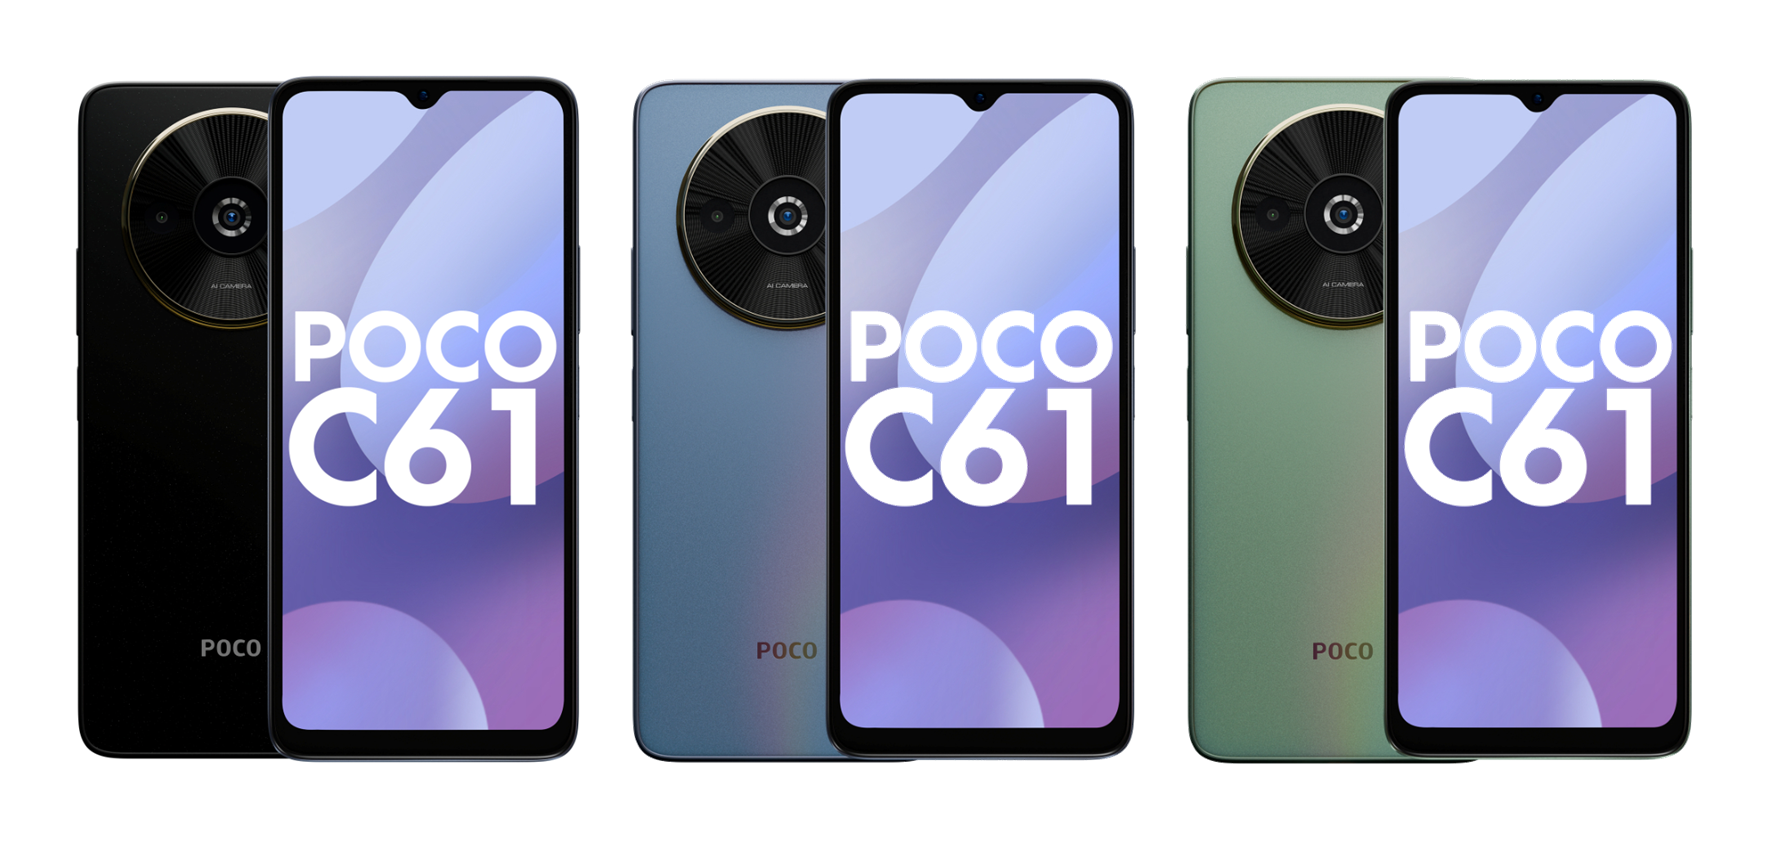 Écran LCD 90 Hz, puce MediaTek Helio G36 et double appareil photo : des images et des détails du smartphone POCO C61 ont fait surface en ligne.